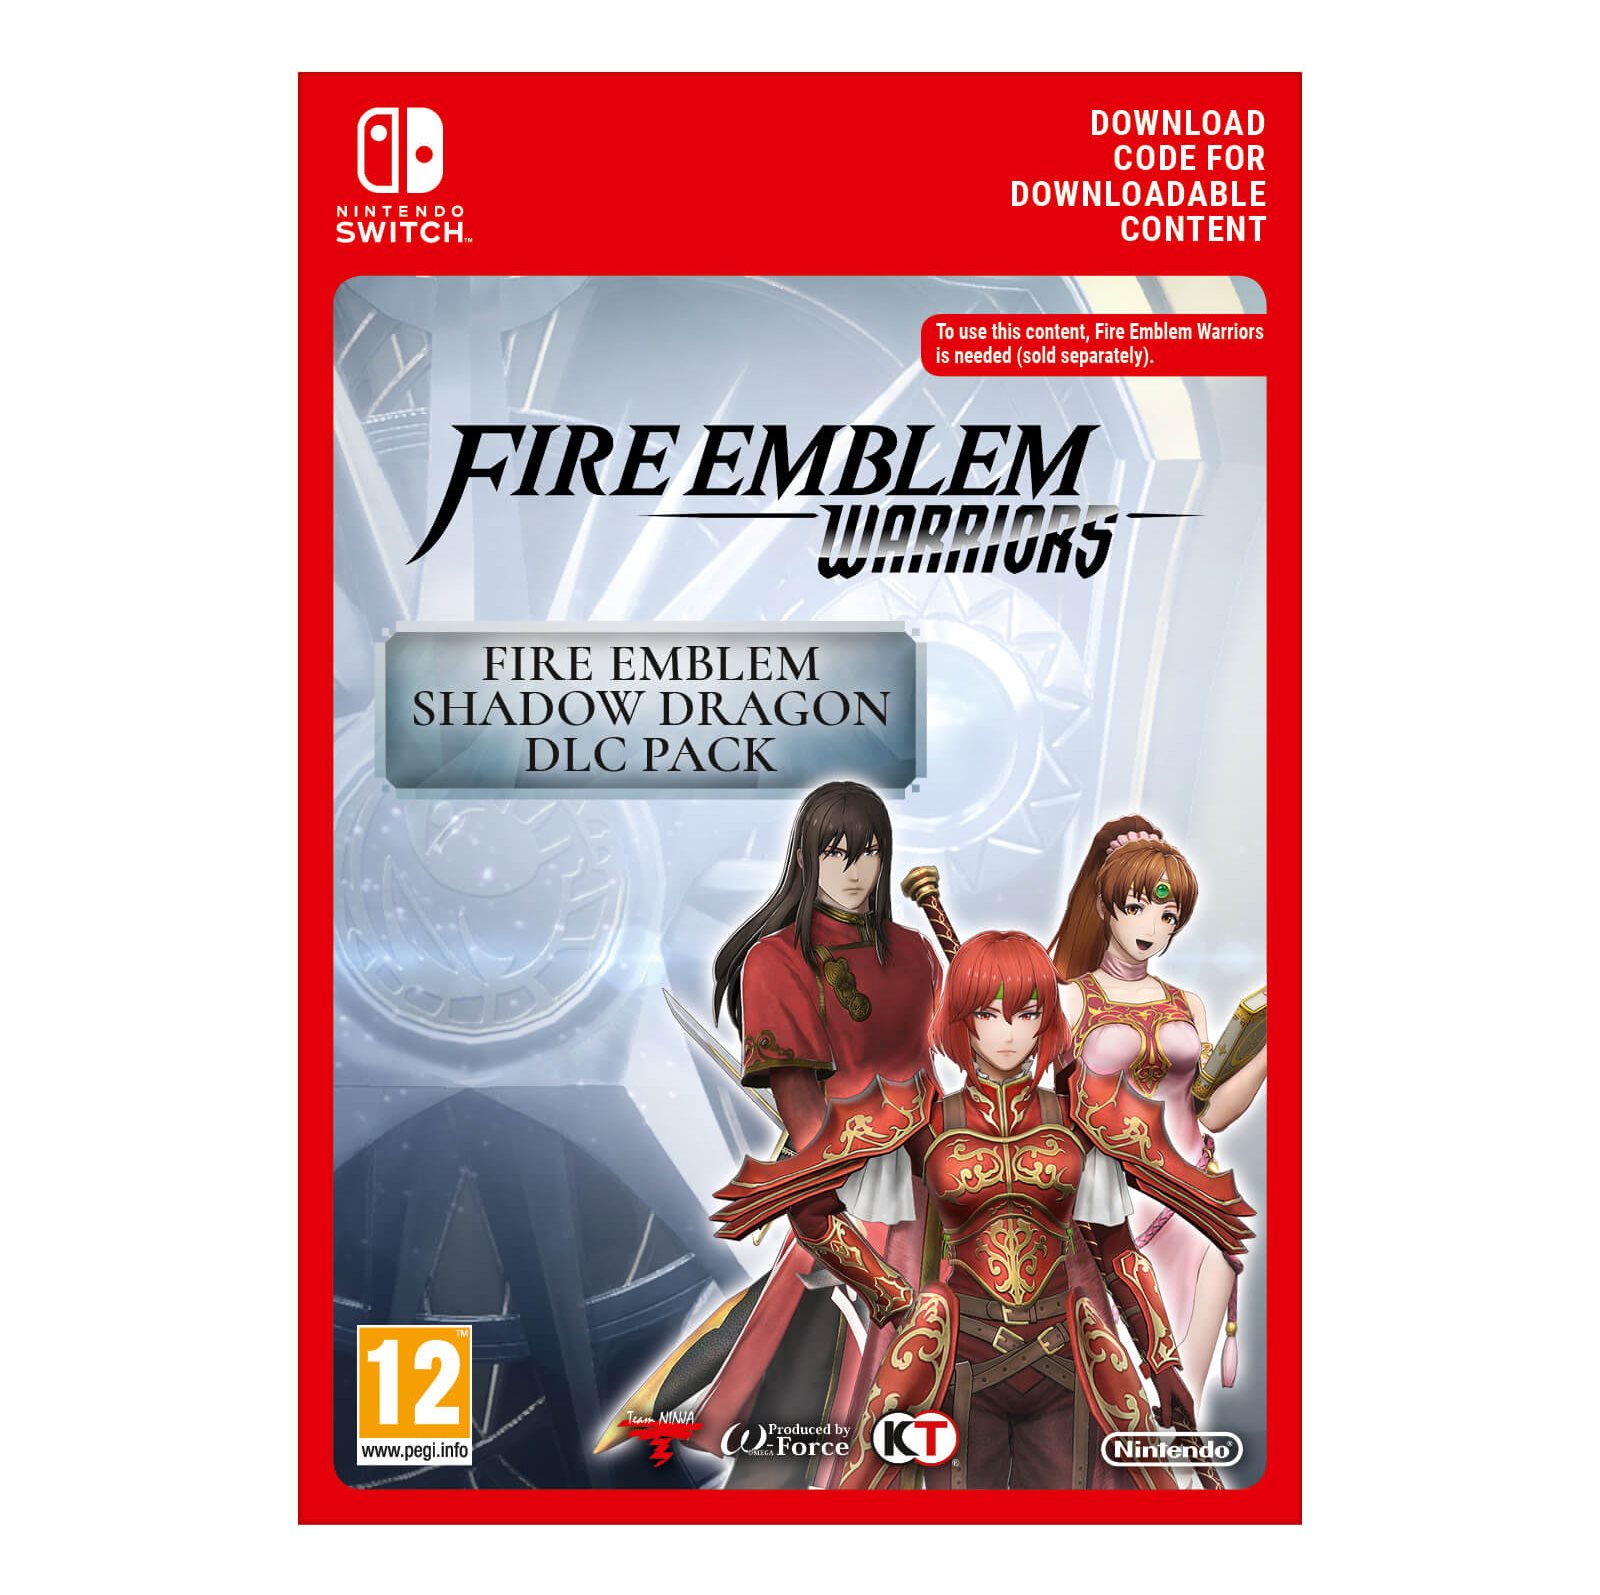 Fire Emblem Warriors: Fire Emblem Shadow Dragon DLC - Nintendo Switch Digital